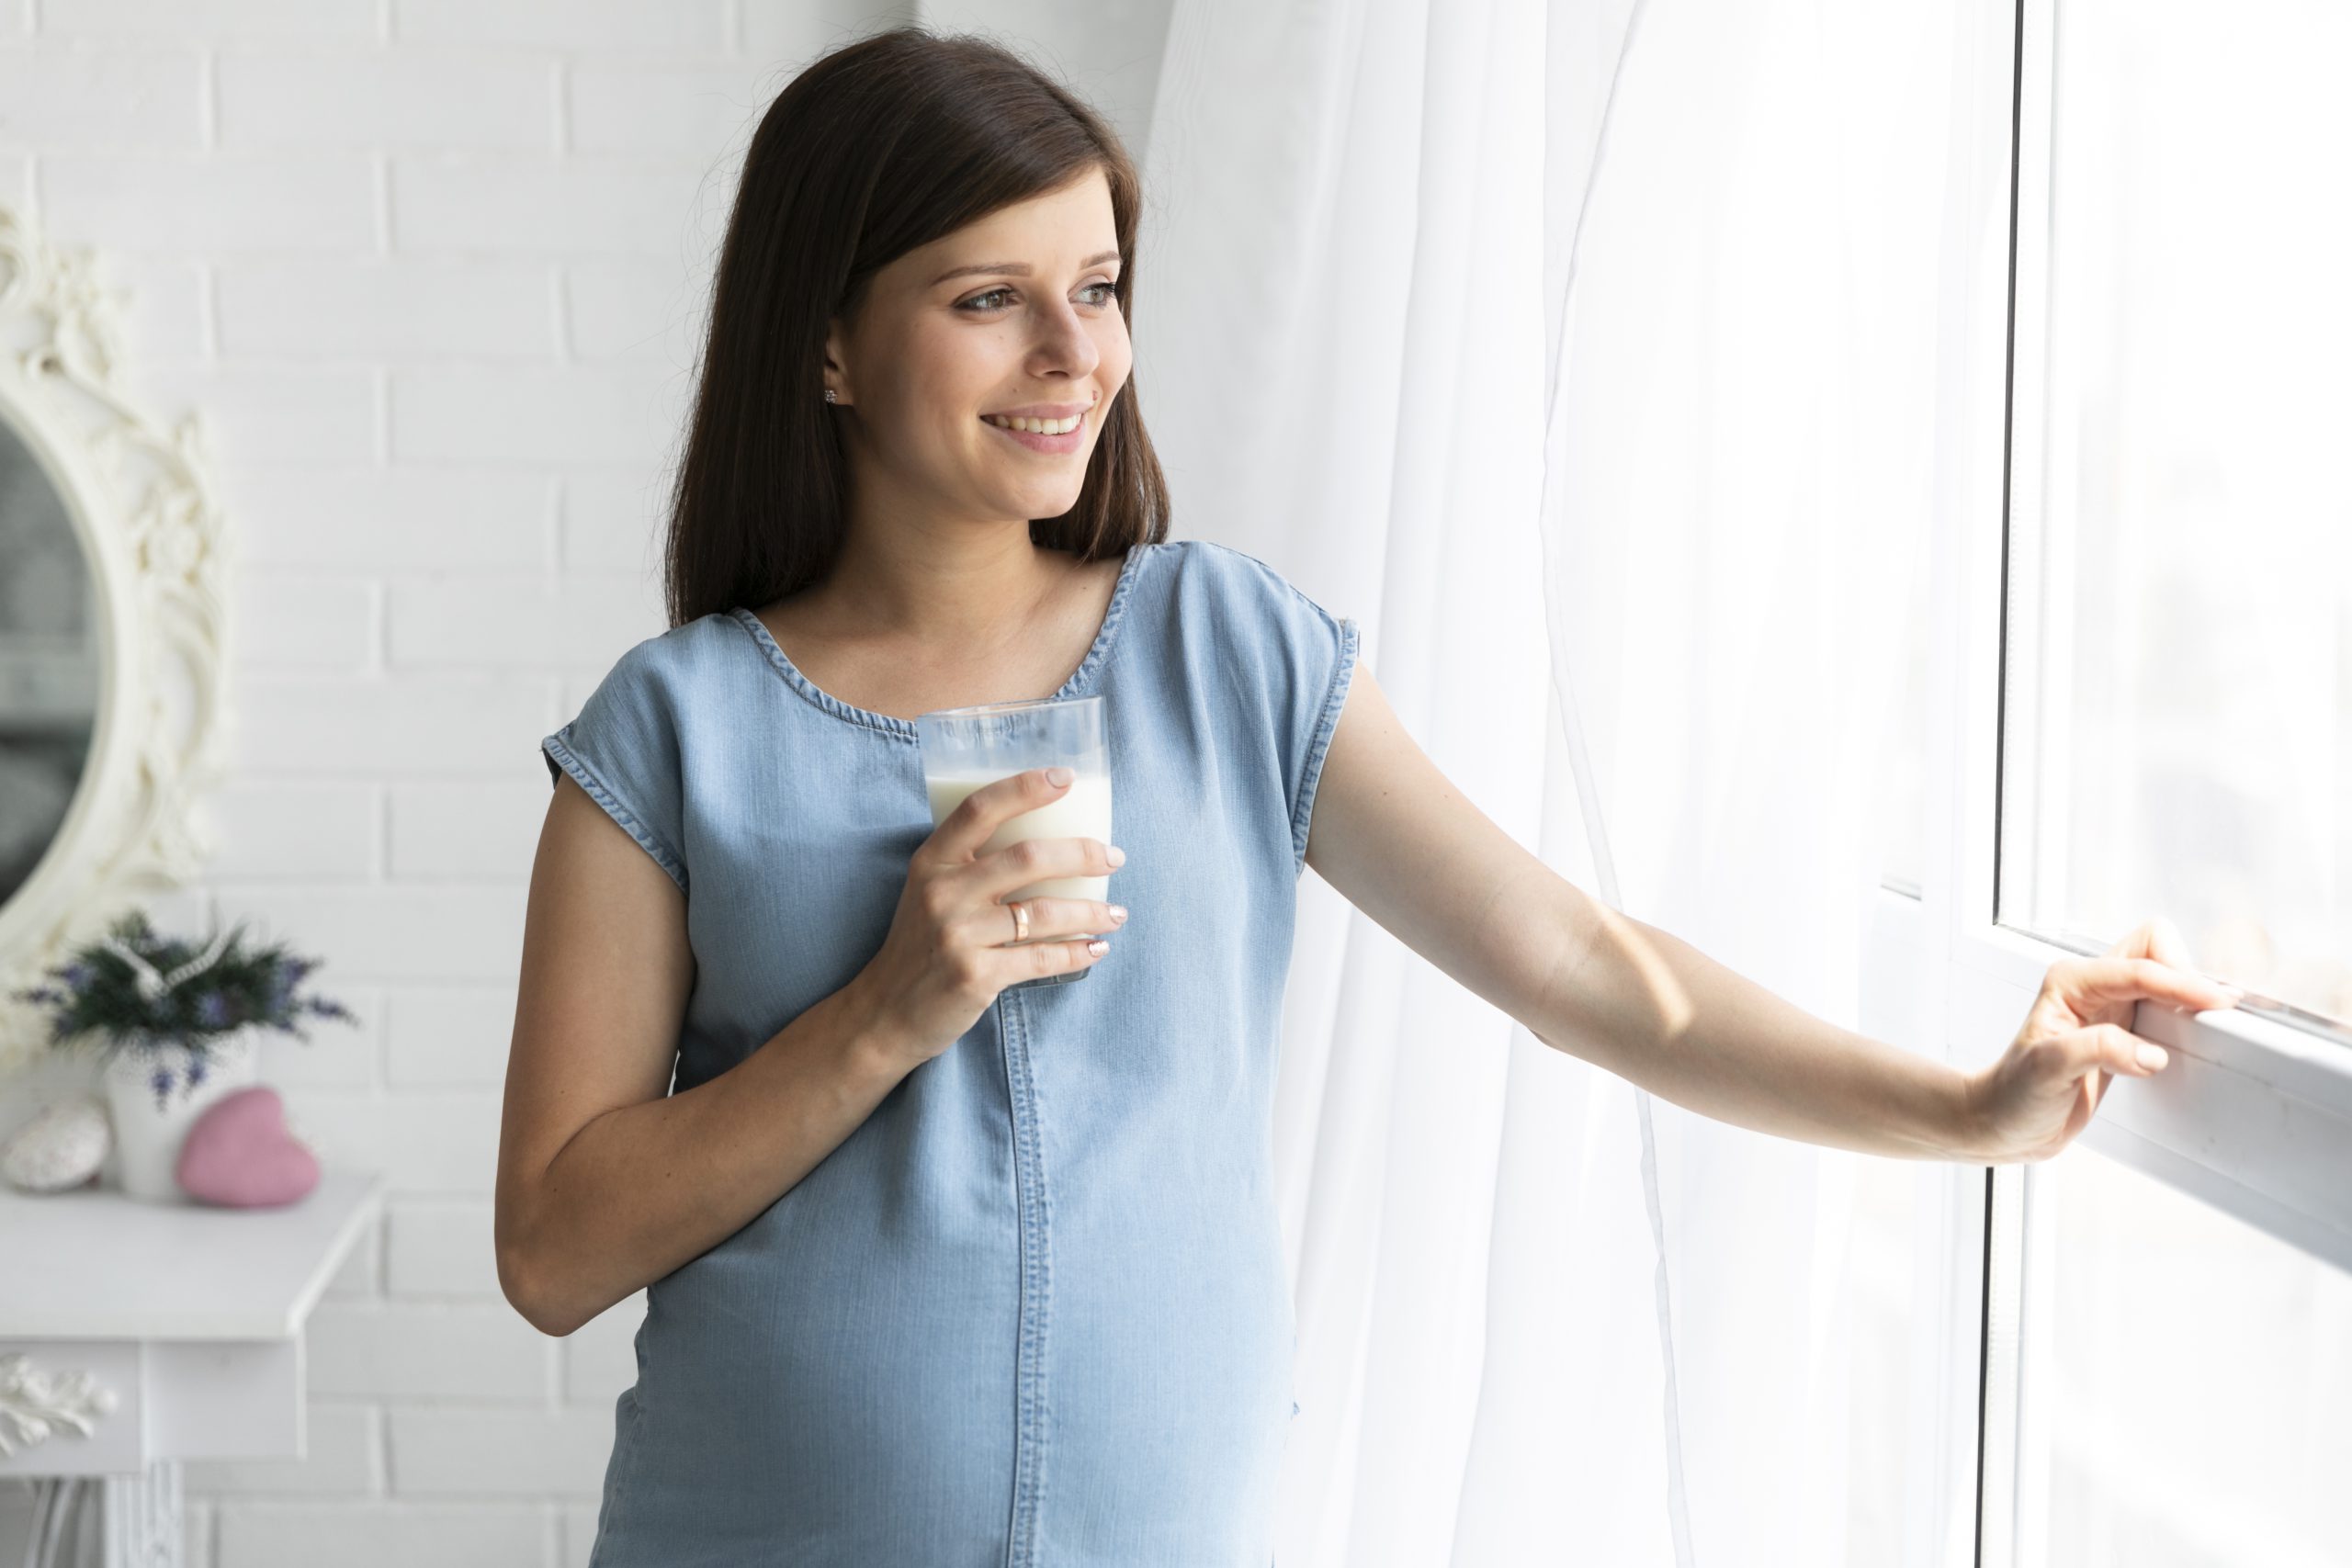 اهمیت استفاده از آب تصفیه شده در دوران بارداری و شیر دهی